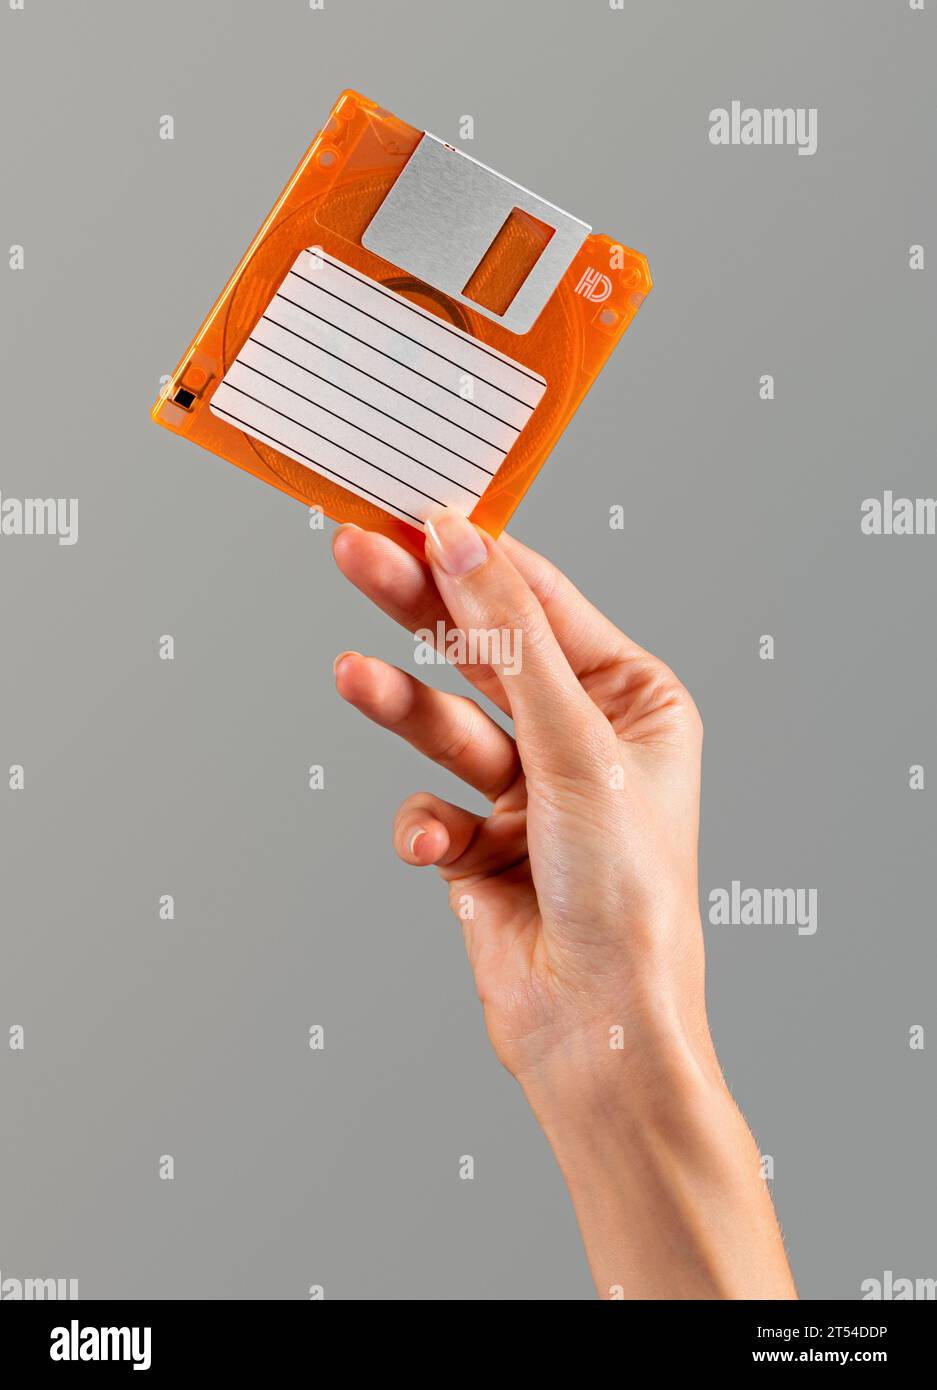 Donna anonima con dita ben curate che mostra un floppy disk di colore arancio retrò con carta per etichette vuota e telaio metallico scorrevole sulla parte superiore in luce Foto Stock